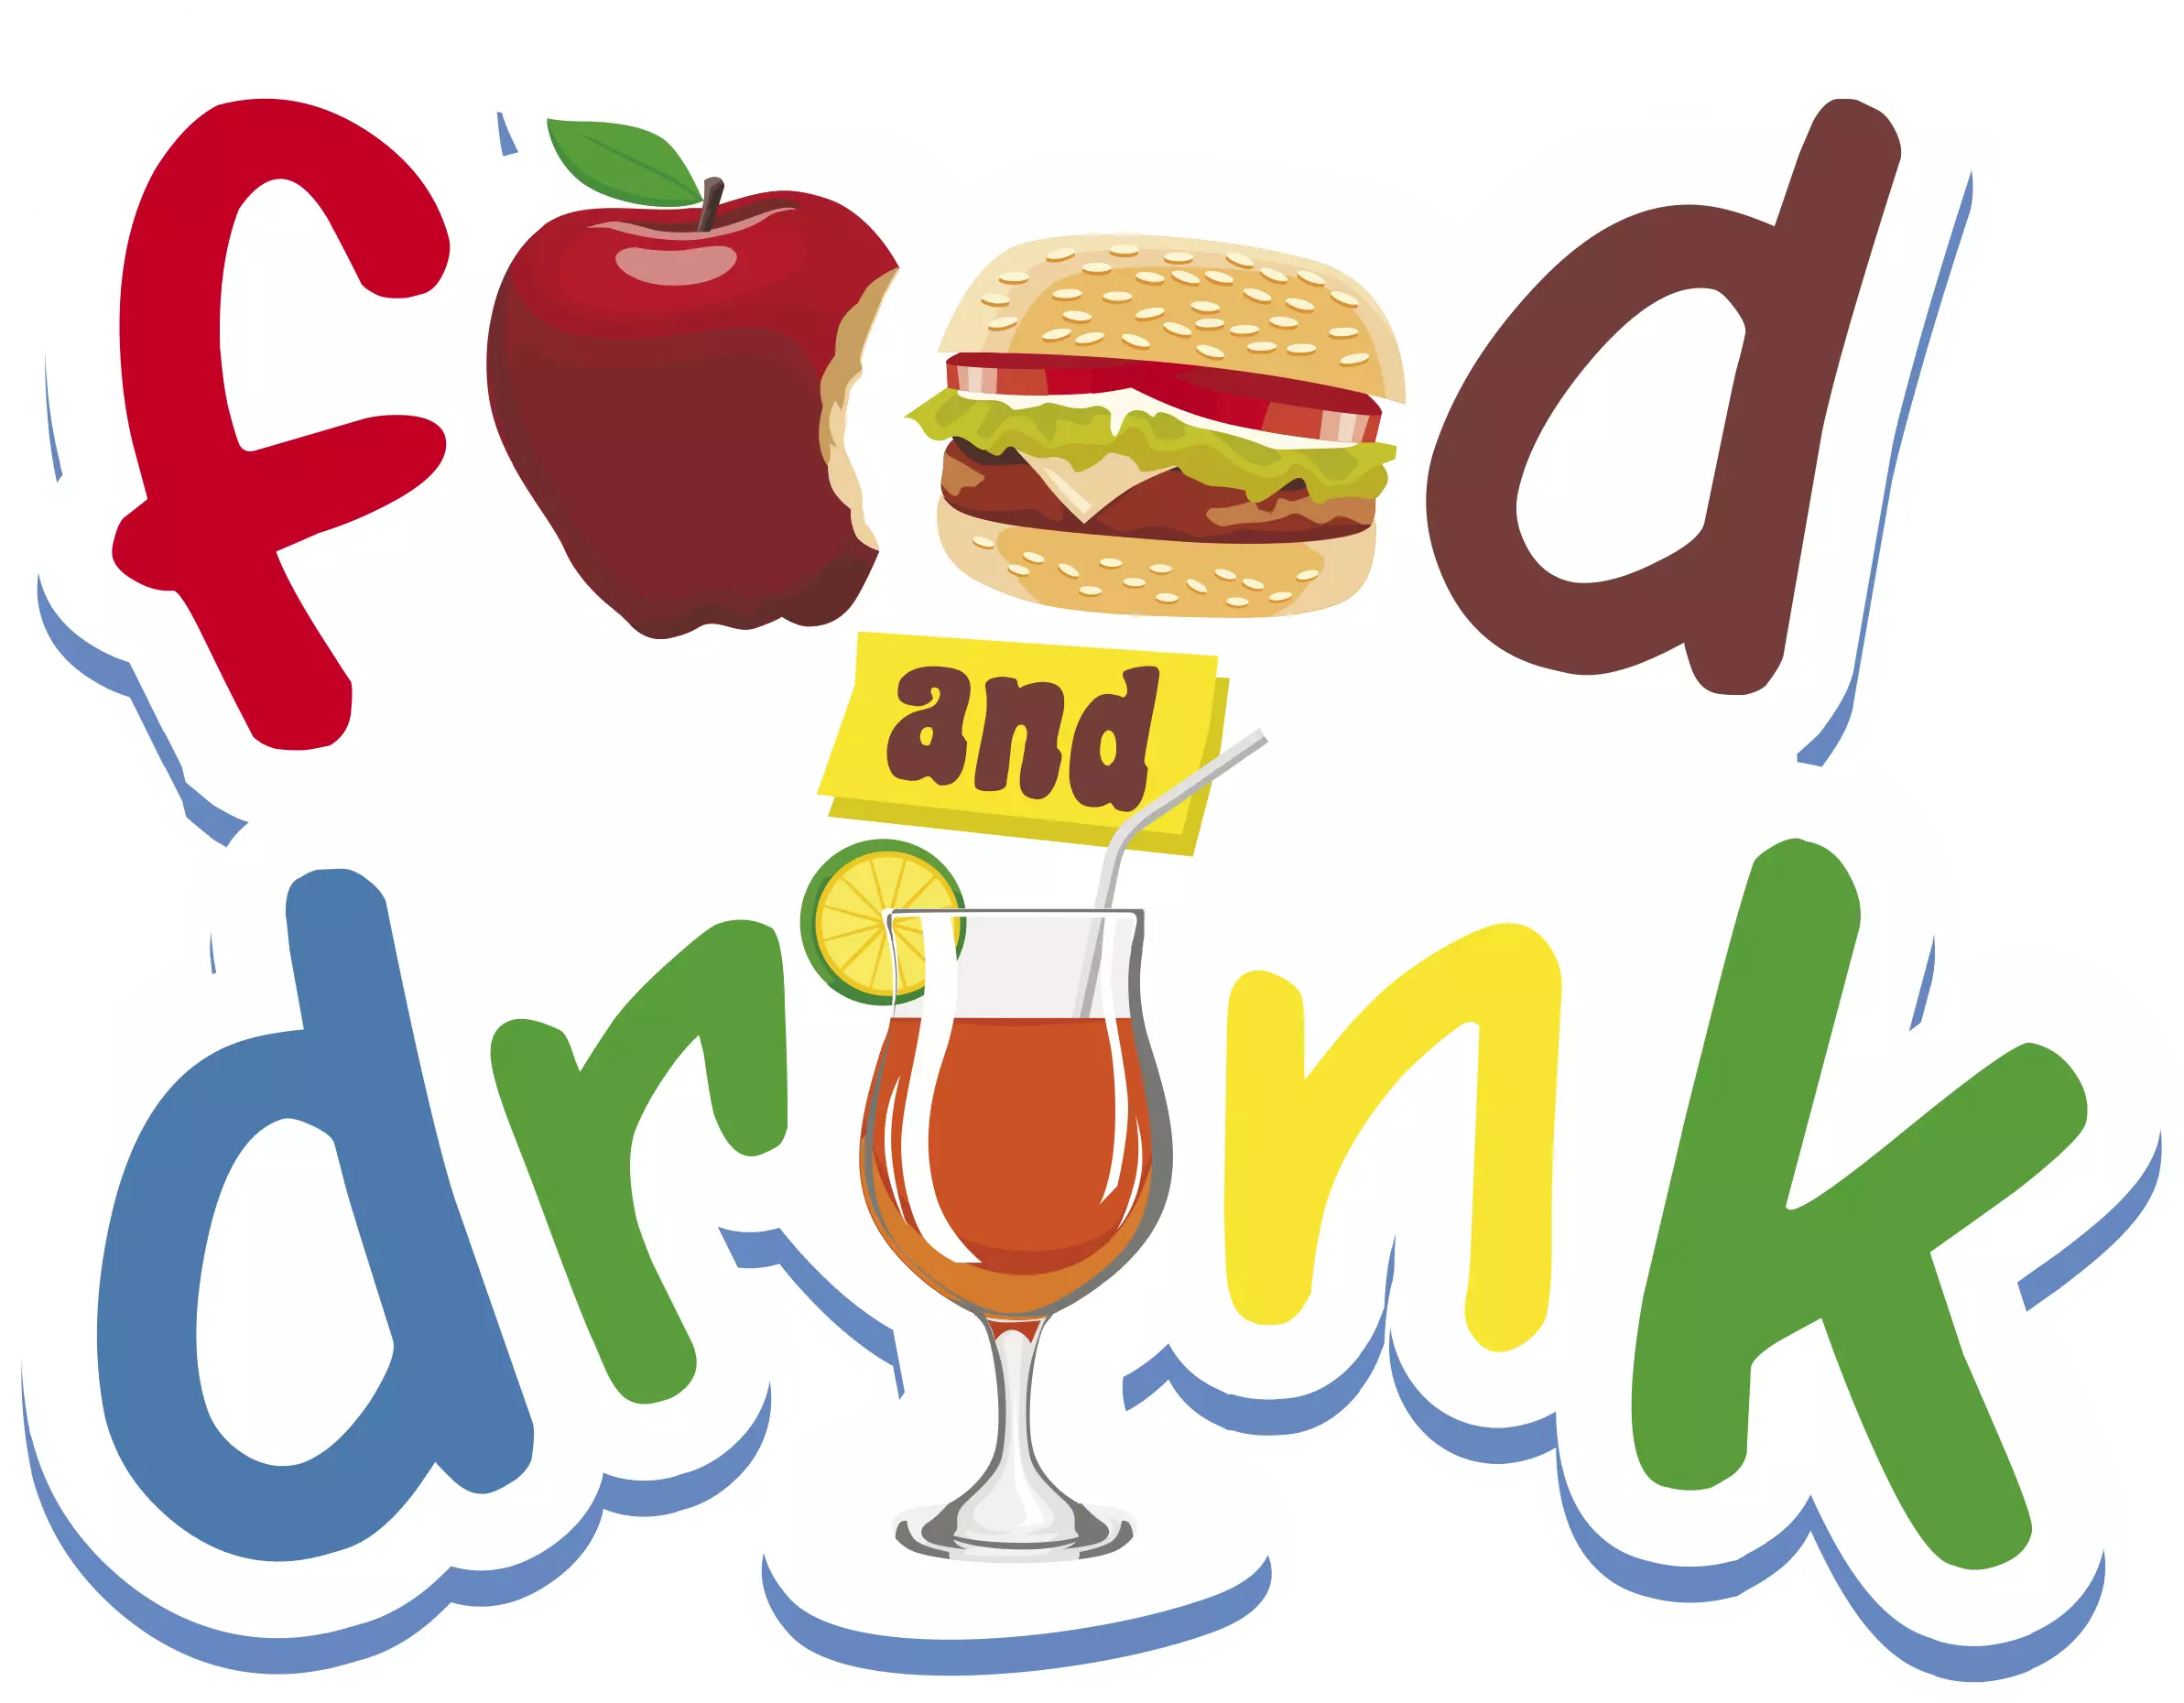 Food & Drink